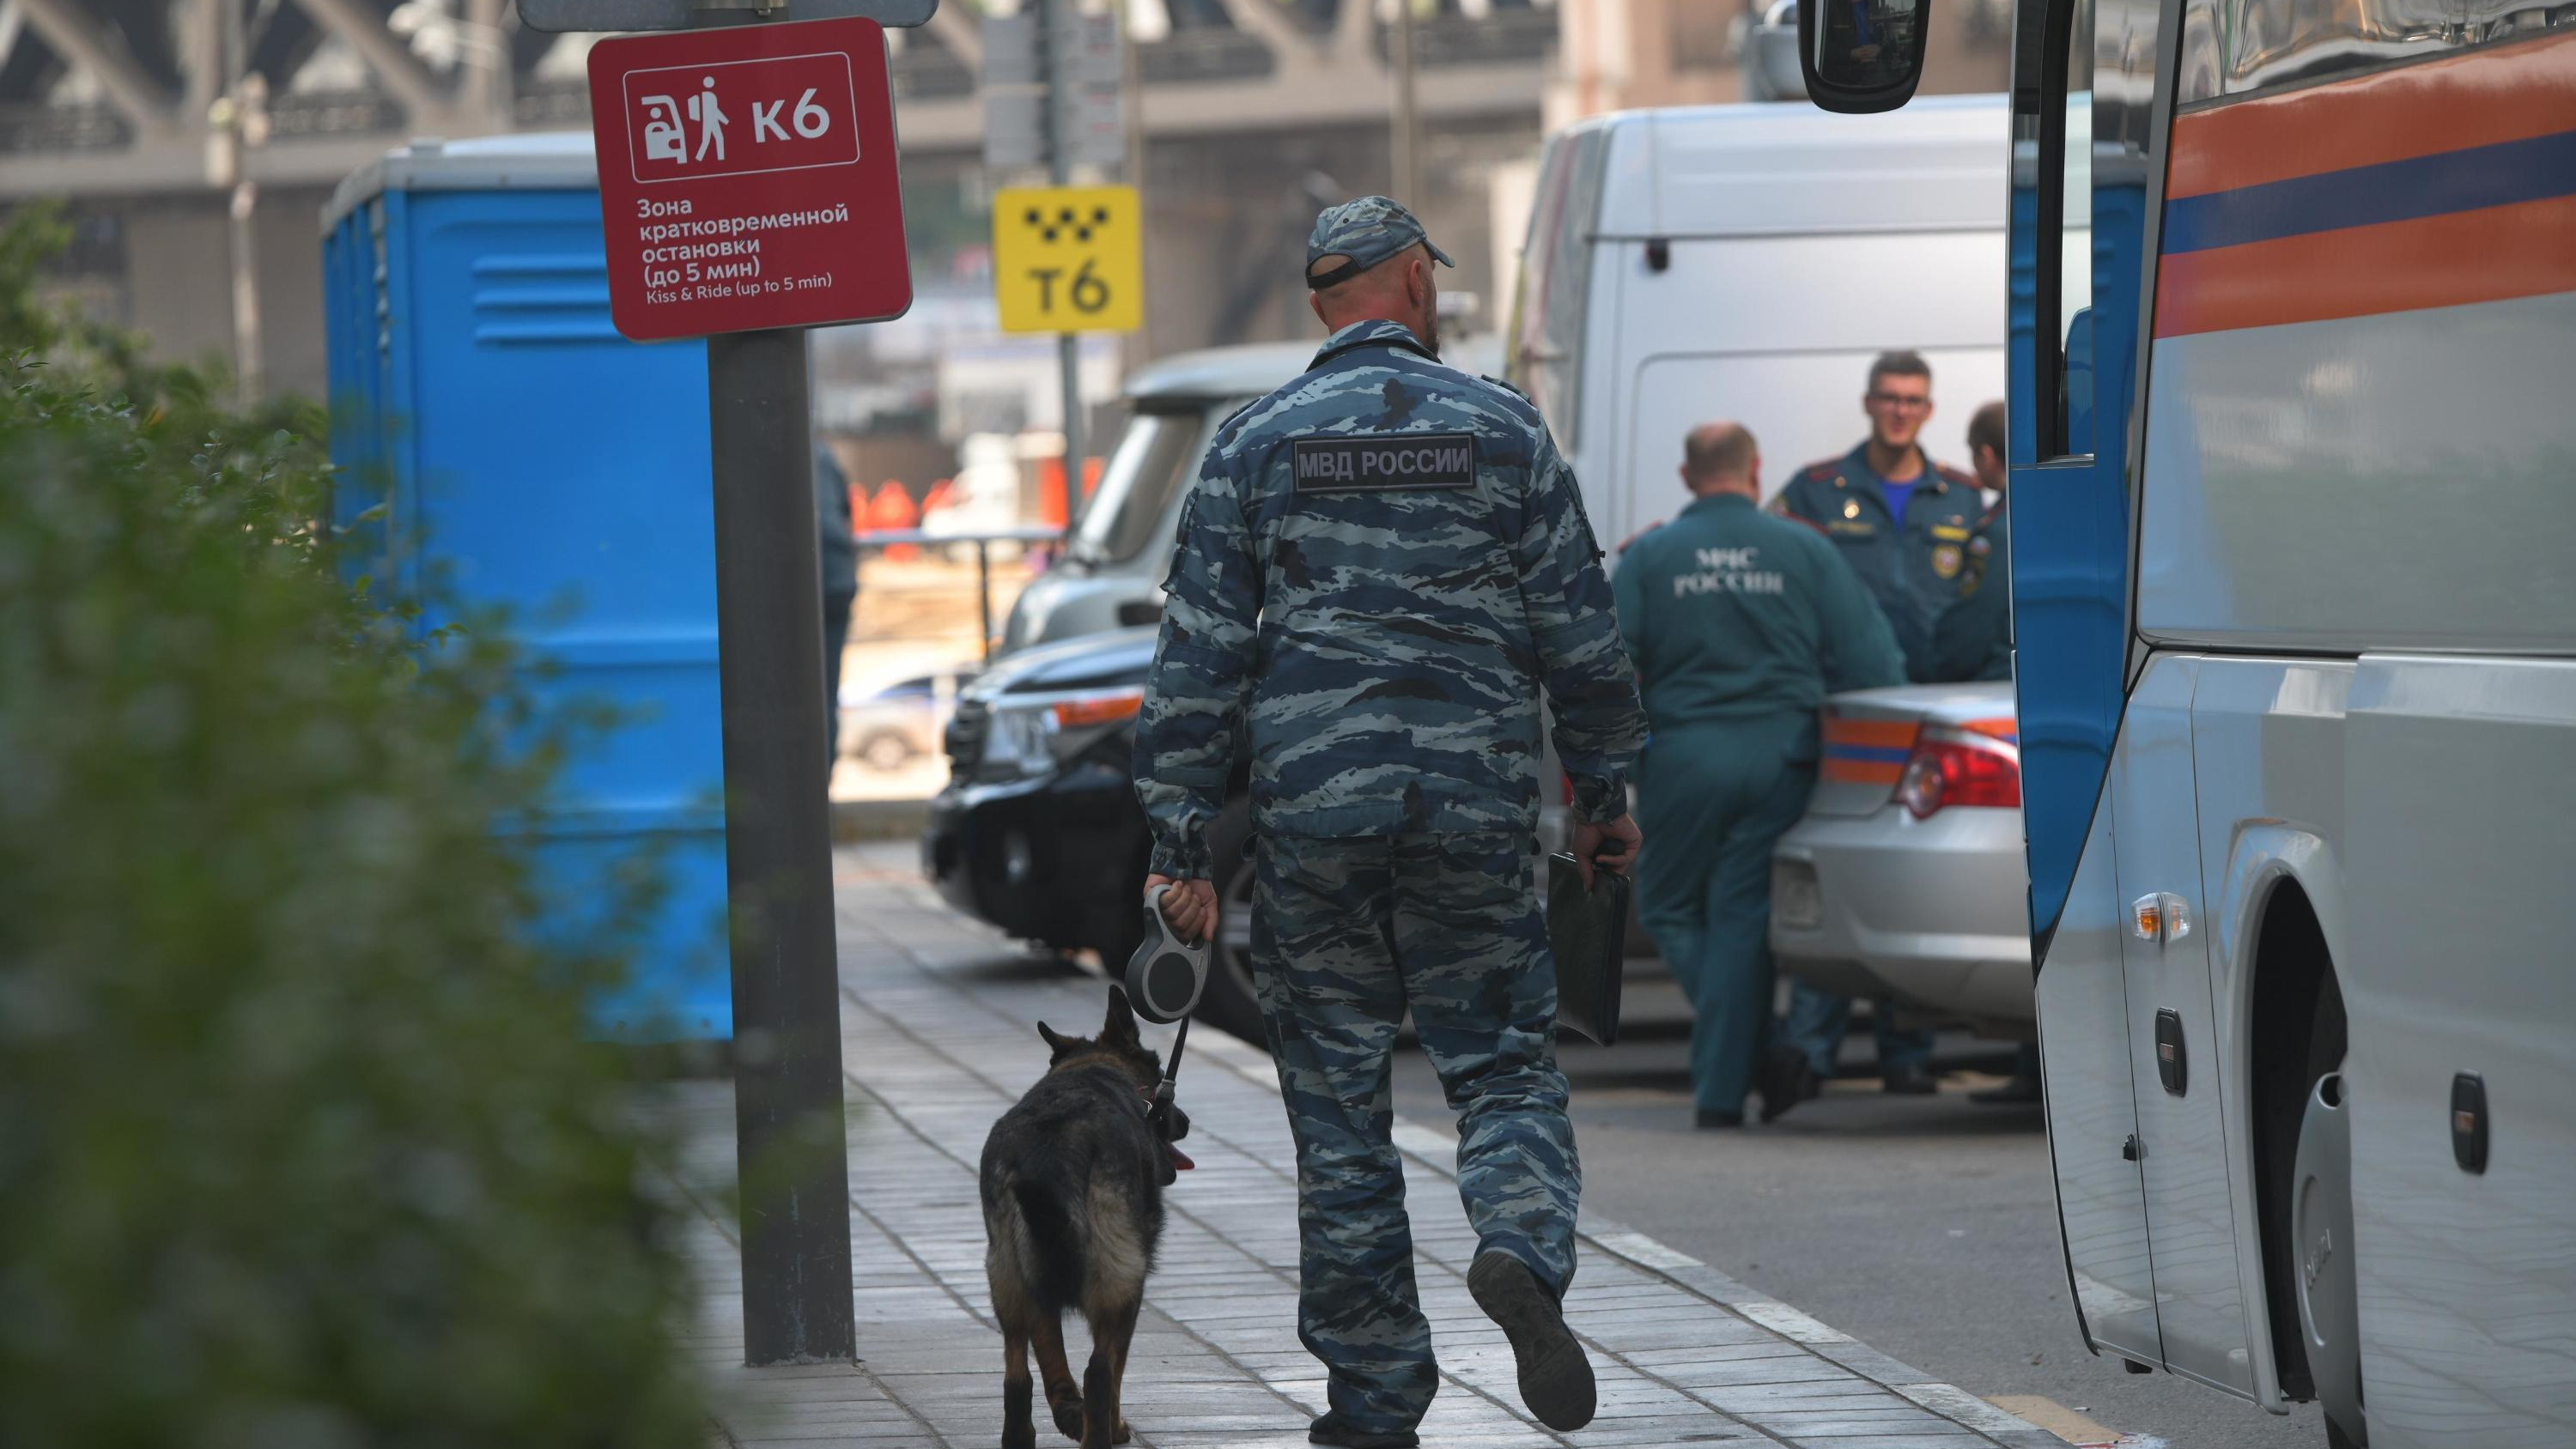 Корпоративный транспорт, служебное жилье и длинный отпуск. Сколько получают полицейские и охранники в Москве